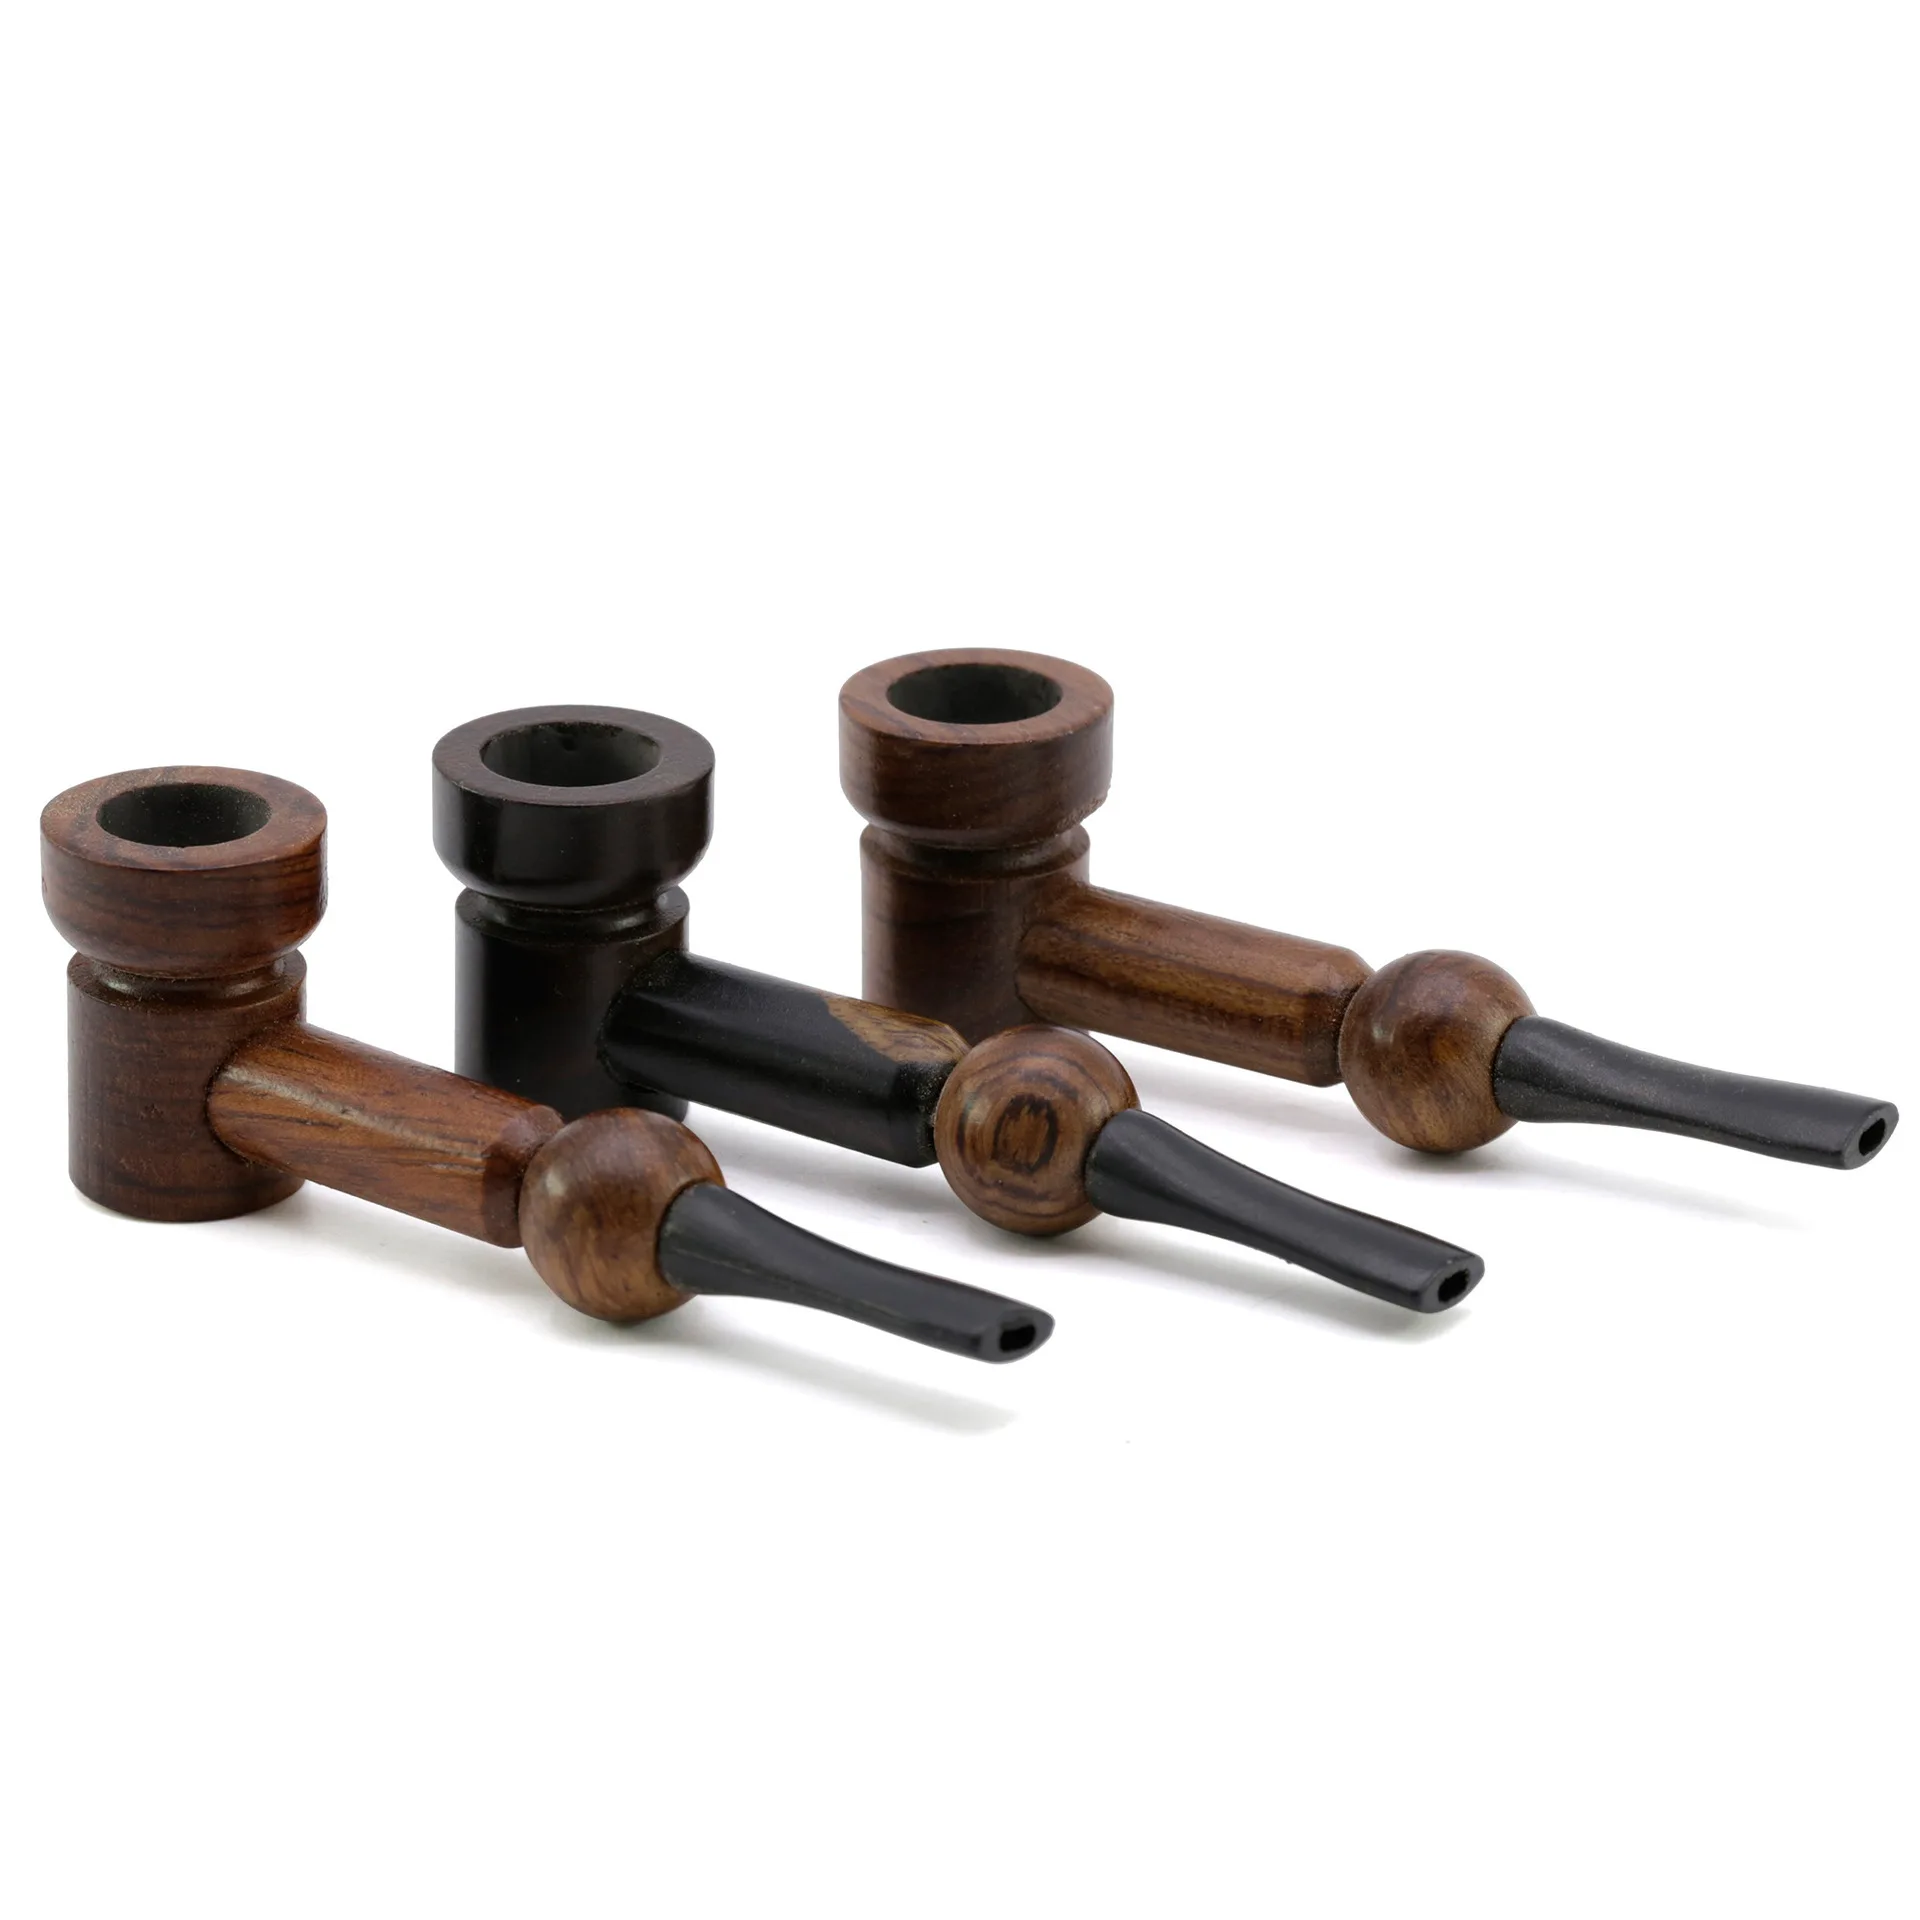 90 мм прямая деревянная трубы, металлические трубы, зажигалки и принадлежности для курения, курительные трубки и аксессуары